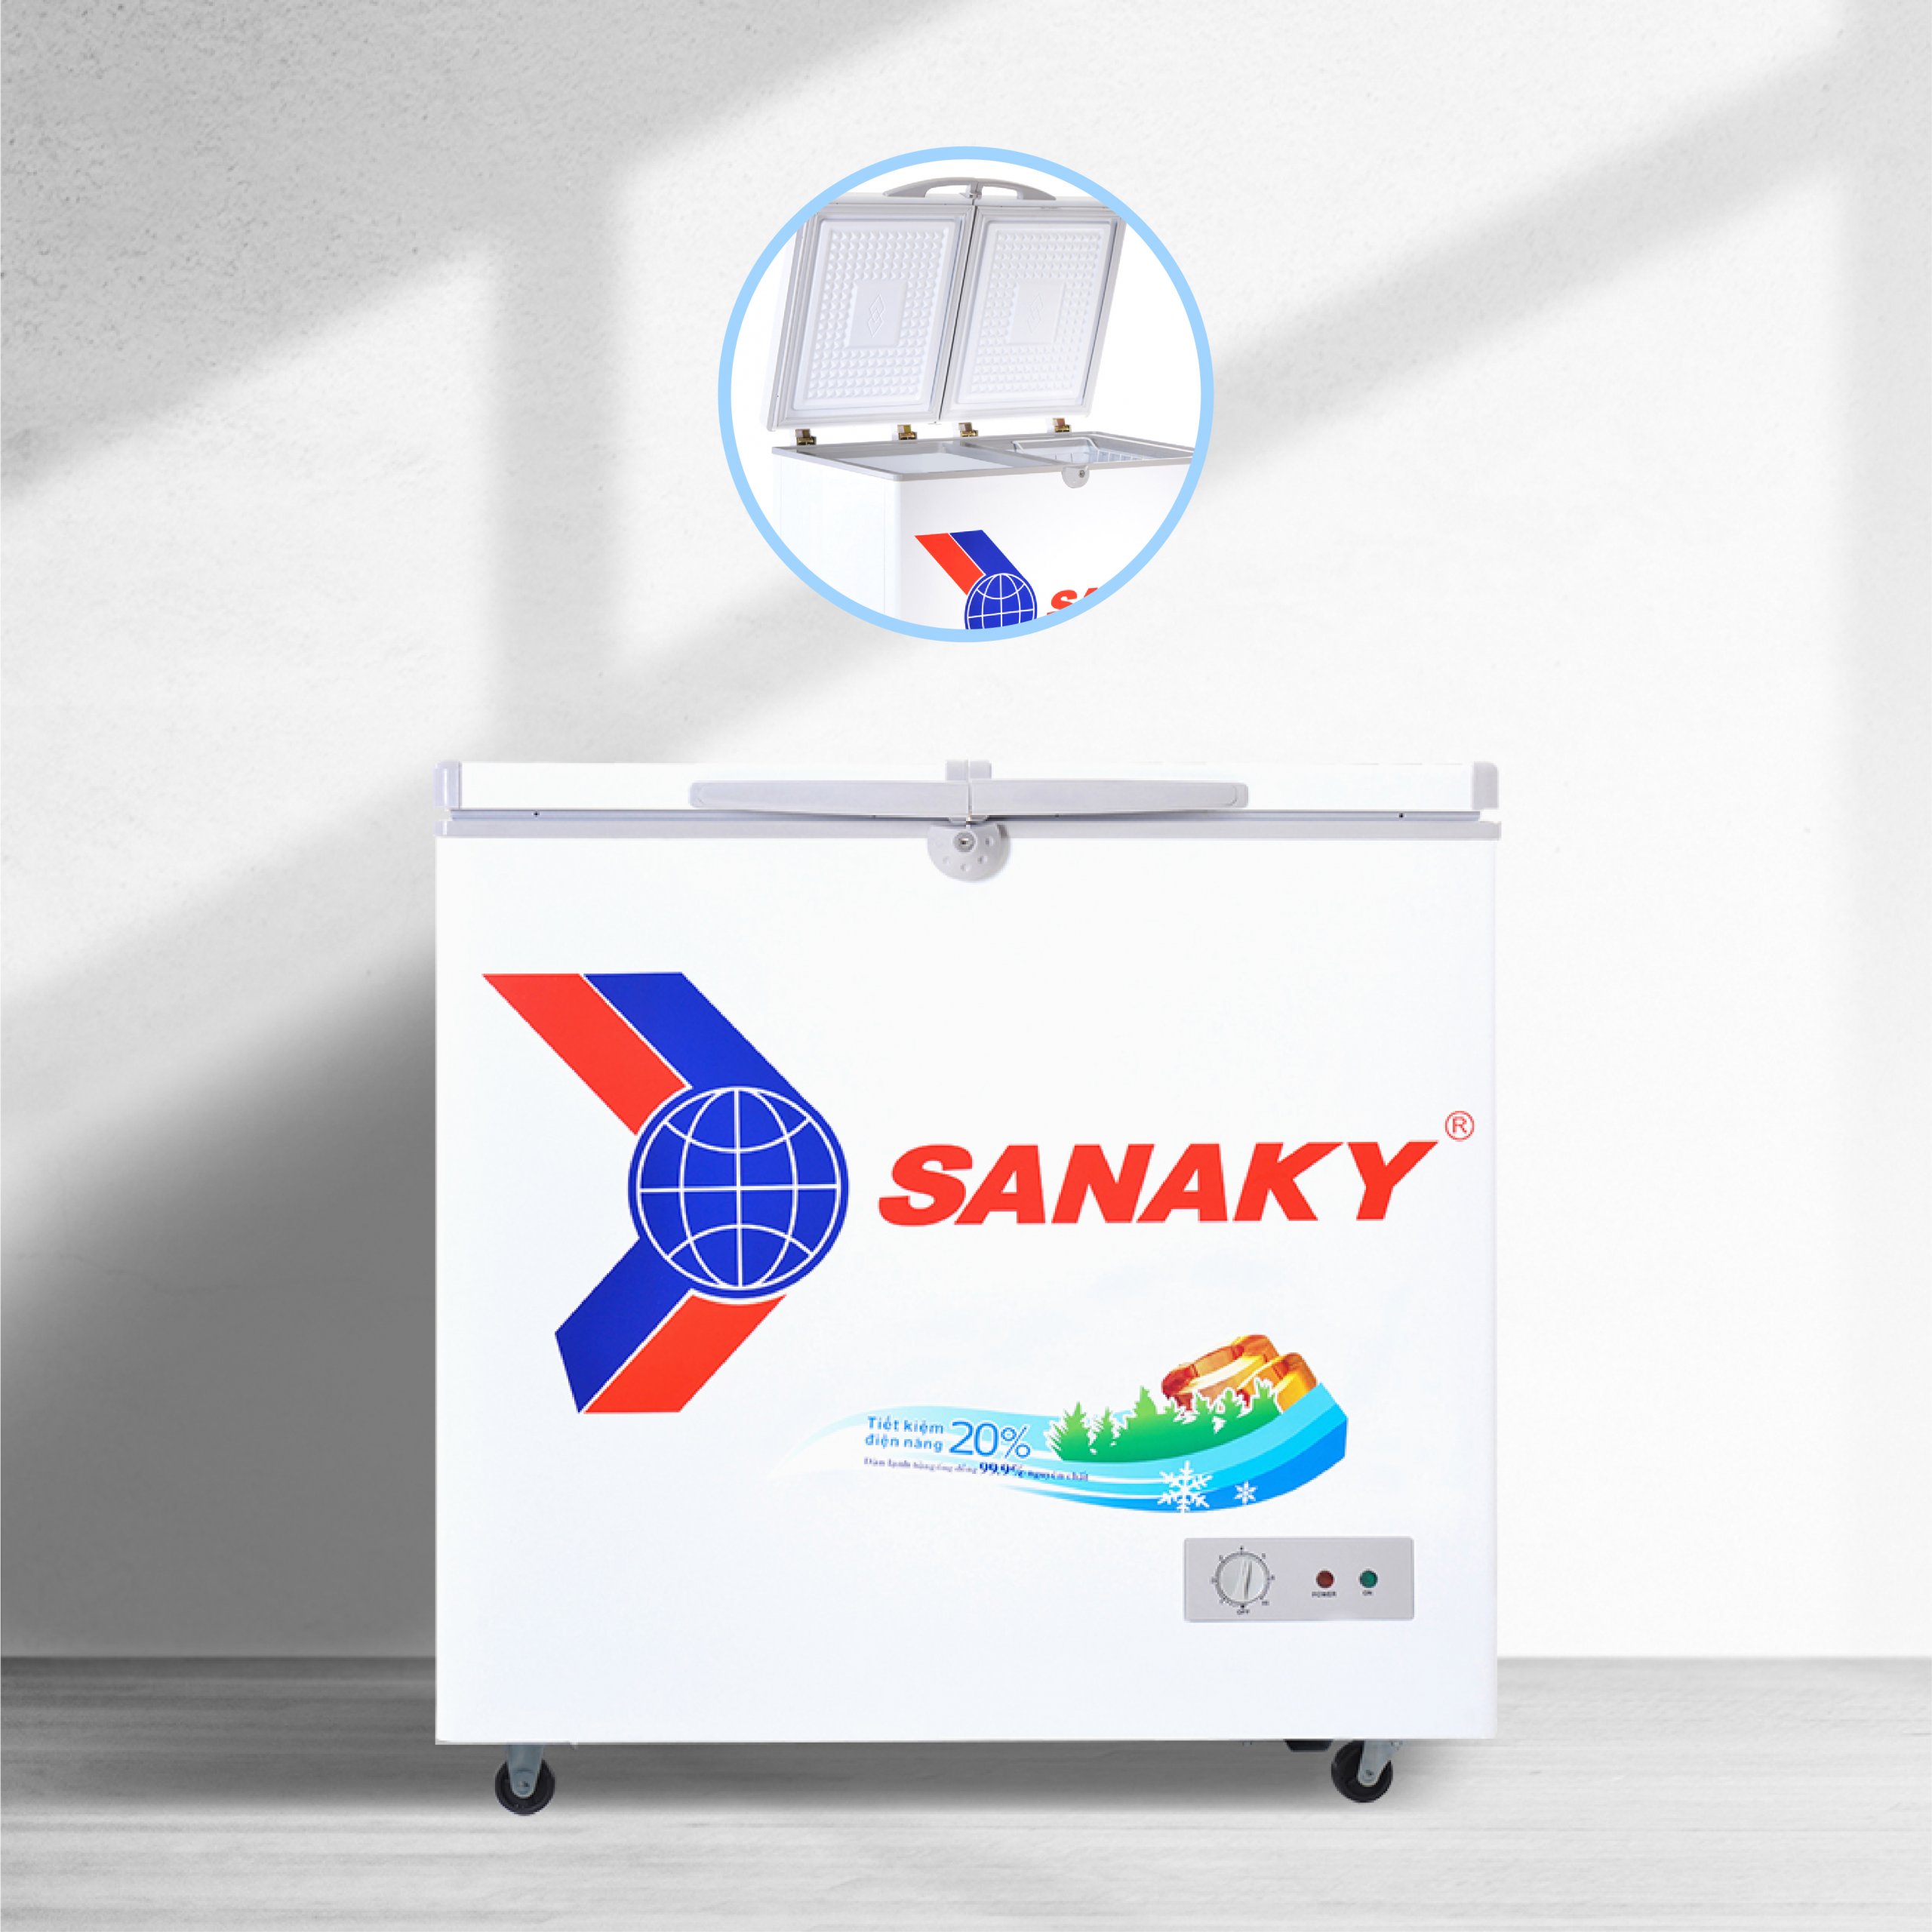 Tủ Đông Sanaky VH-2599A1